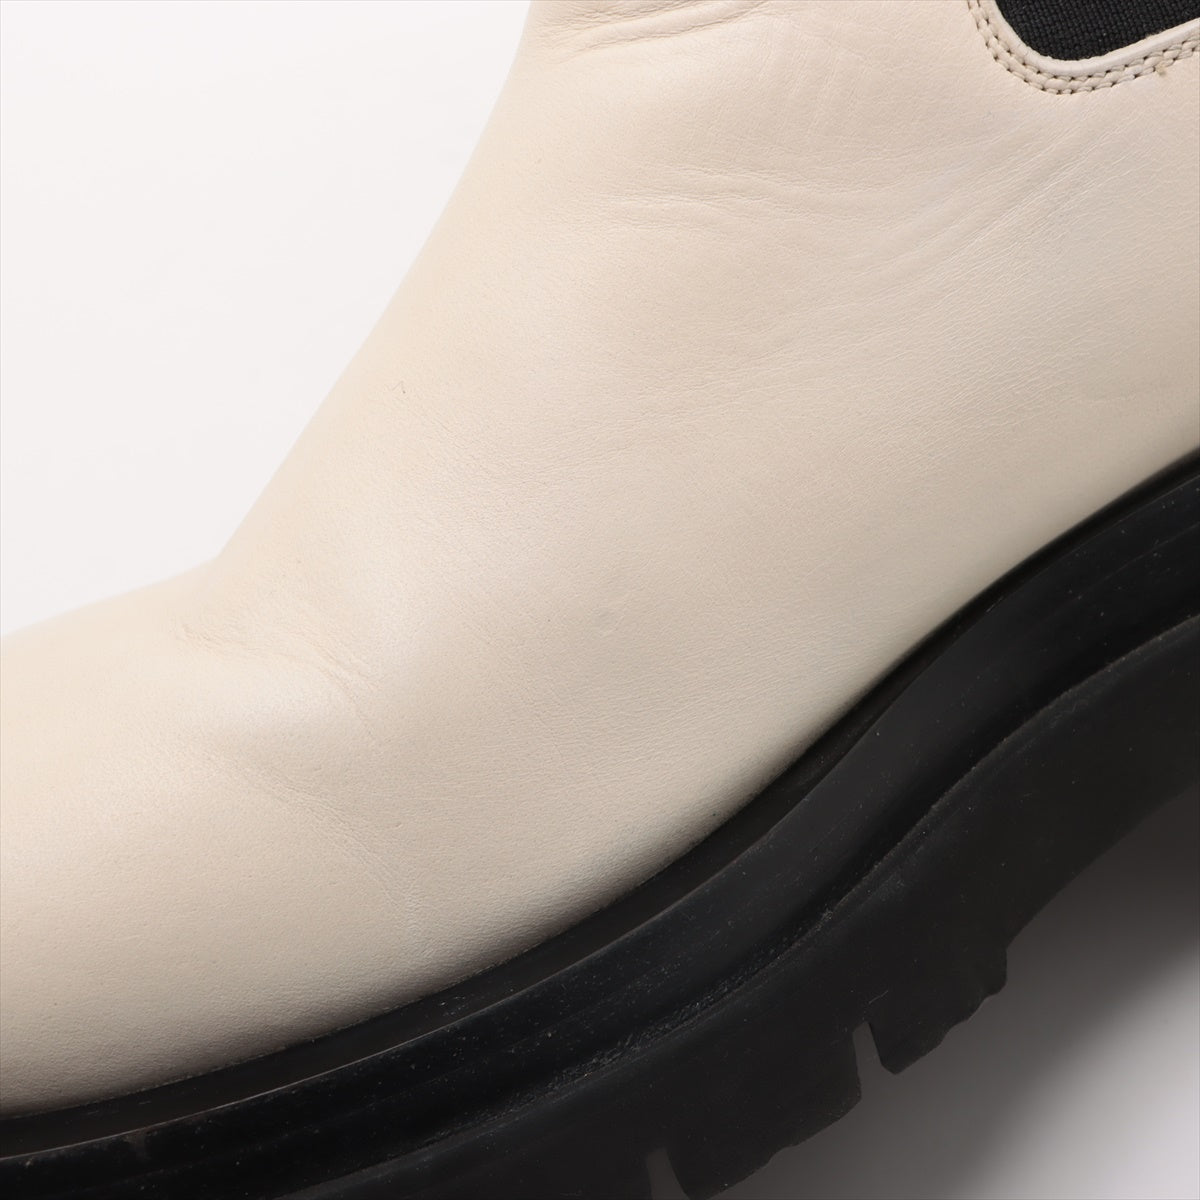 Bottega Veneta 皮革側面美食靴 39 黑色 x 白色行李箱